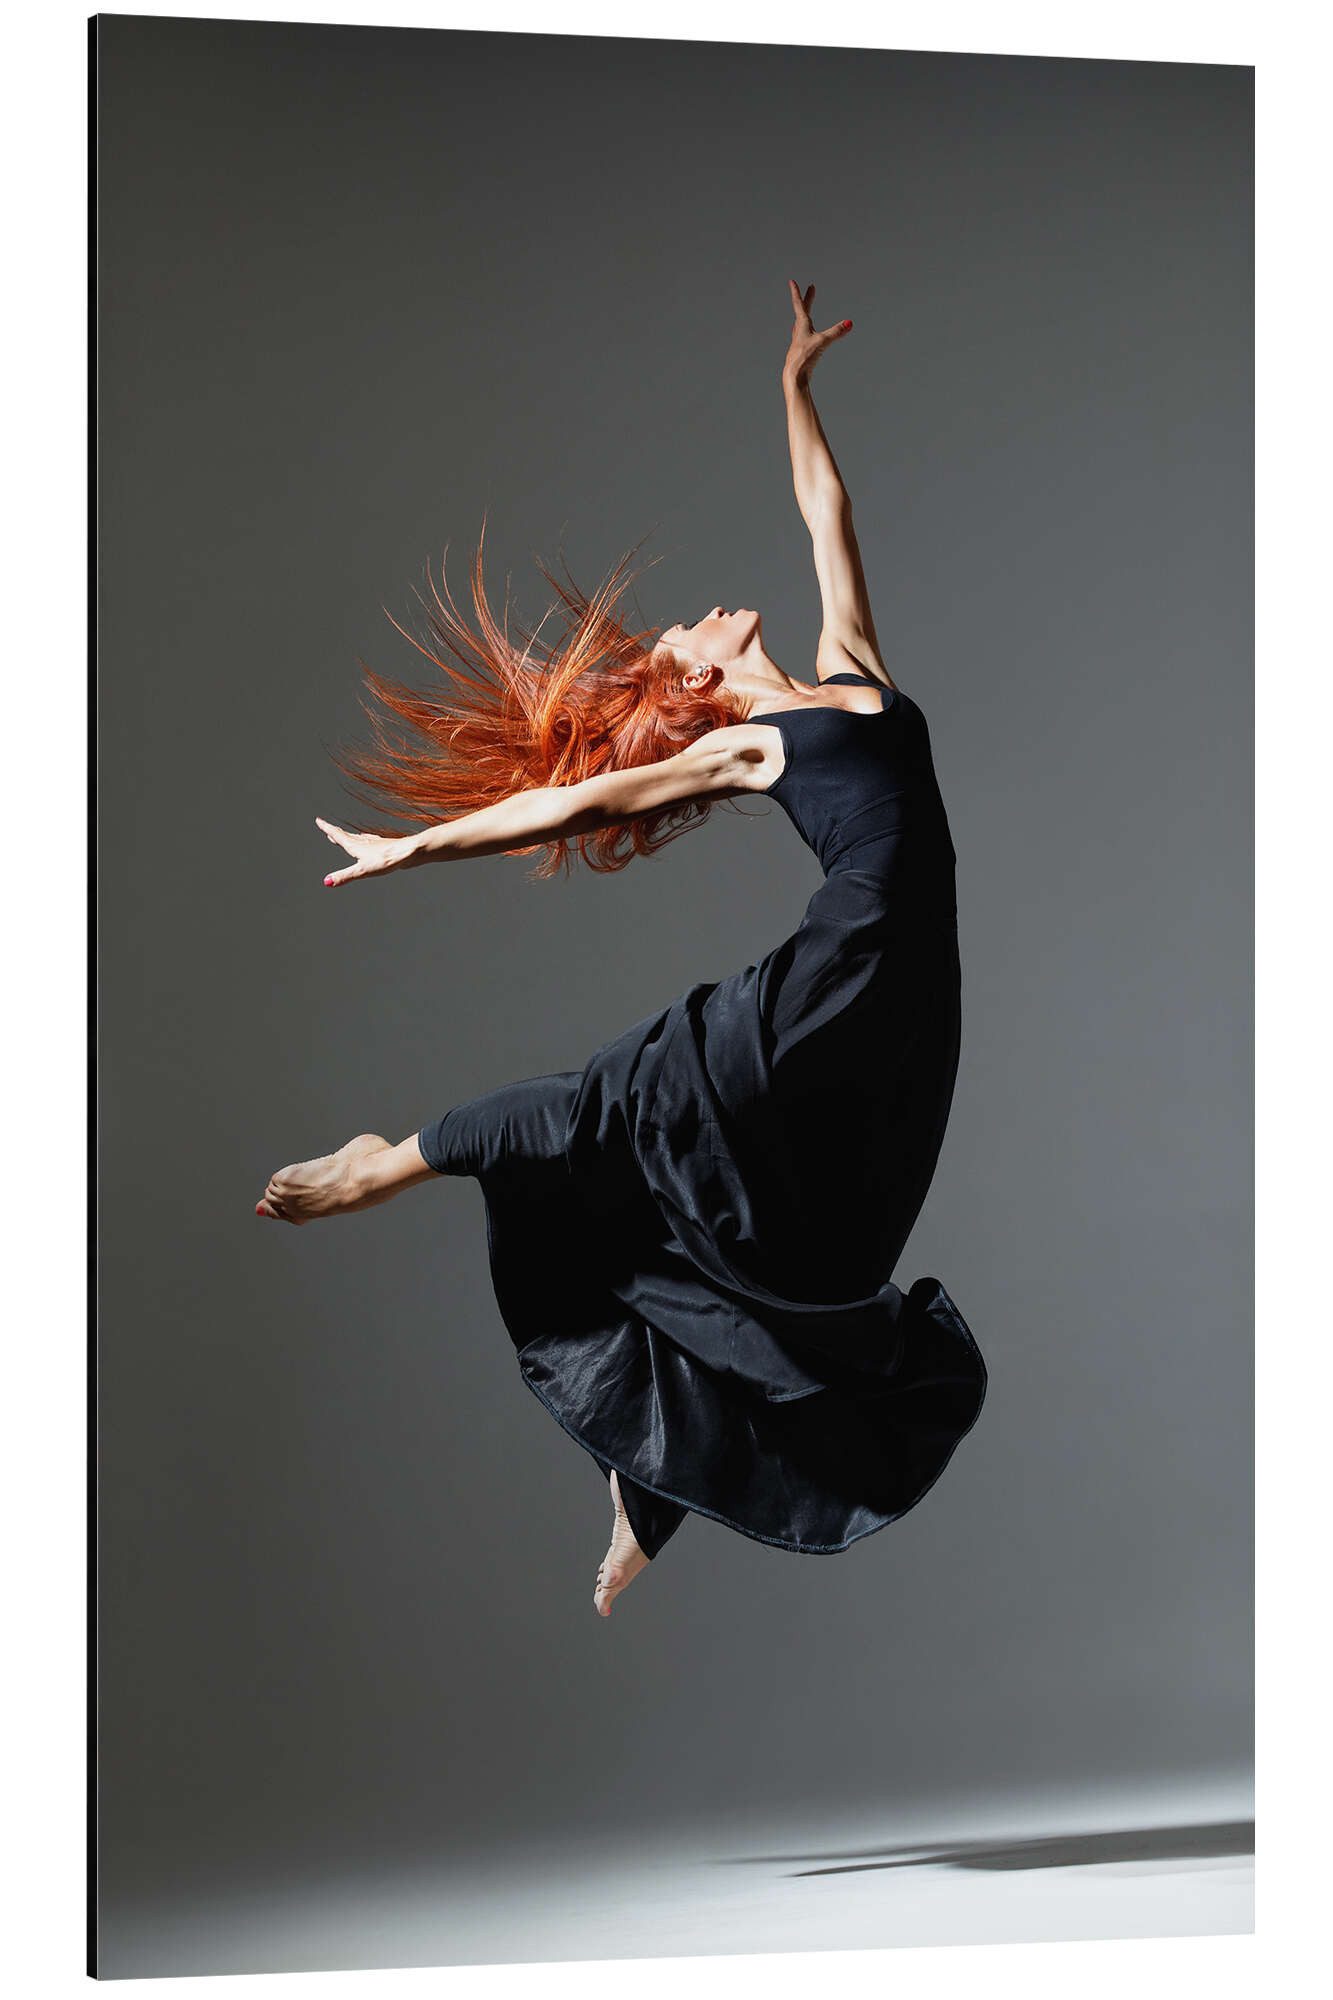 Posterlounge Alu-Dibond-Druck Editors Choice, Tänzerin mit roten Haaren, Fitnessraum Modern Fotografie